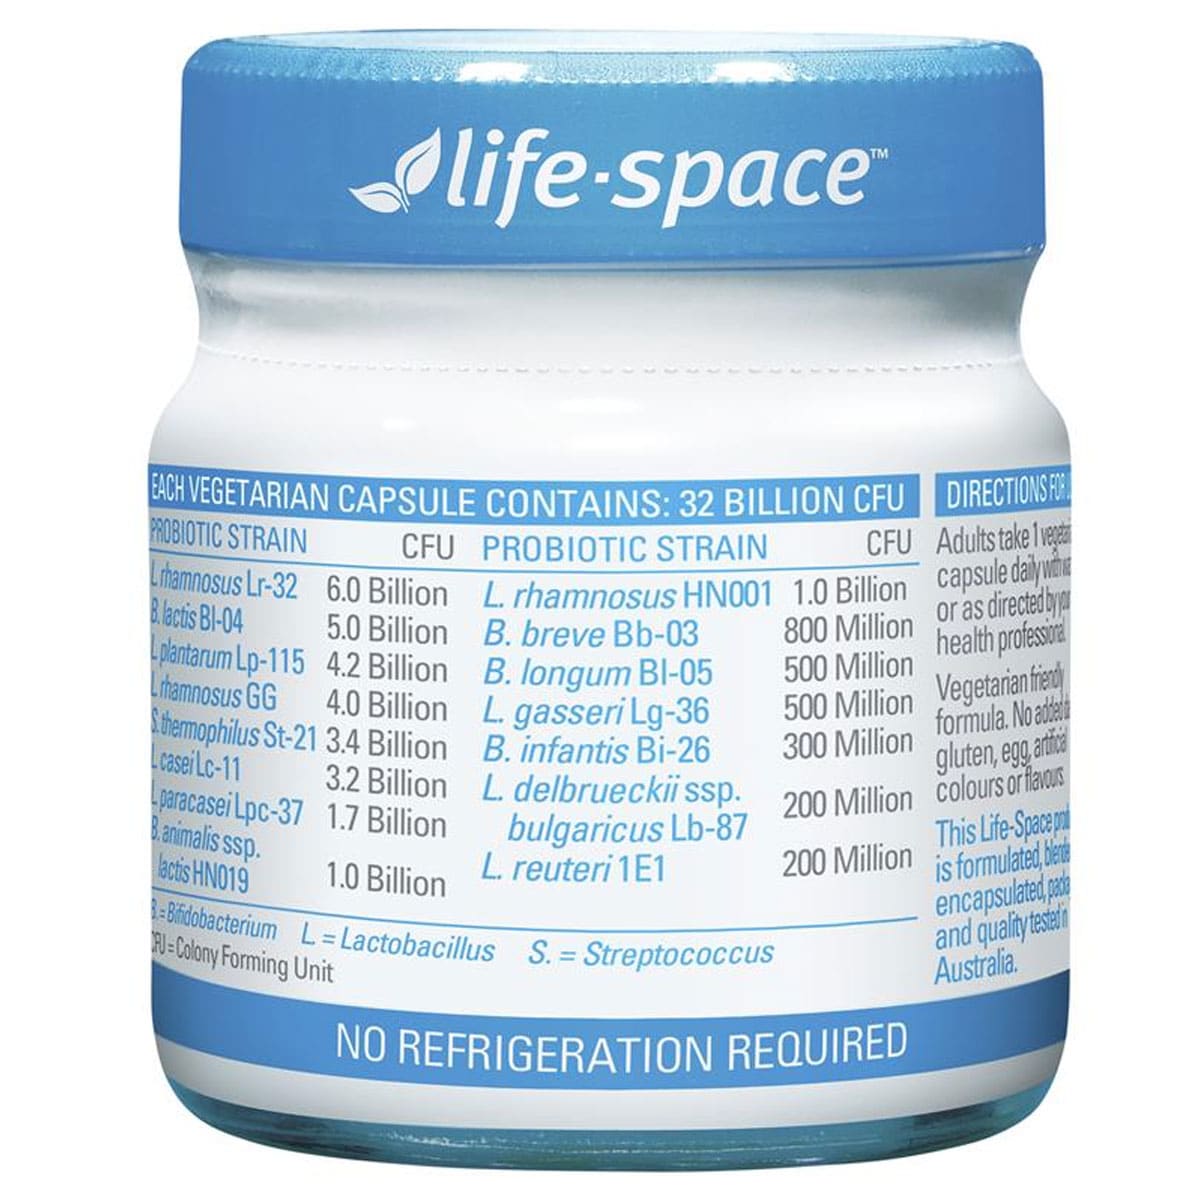 Life-Space Broad Spectrum Probiotic 30 Capsules